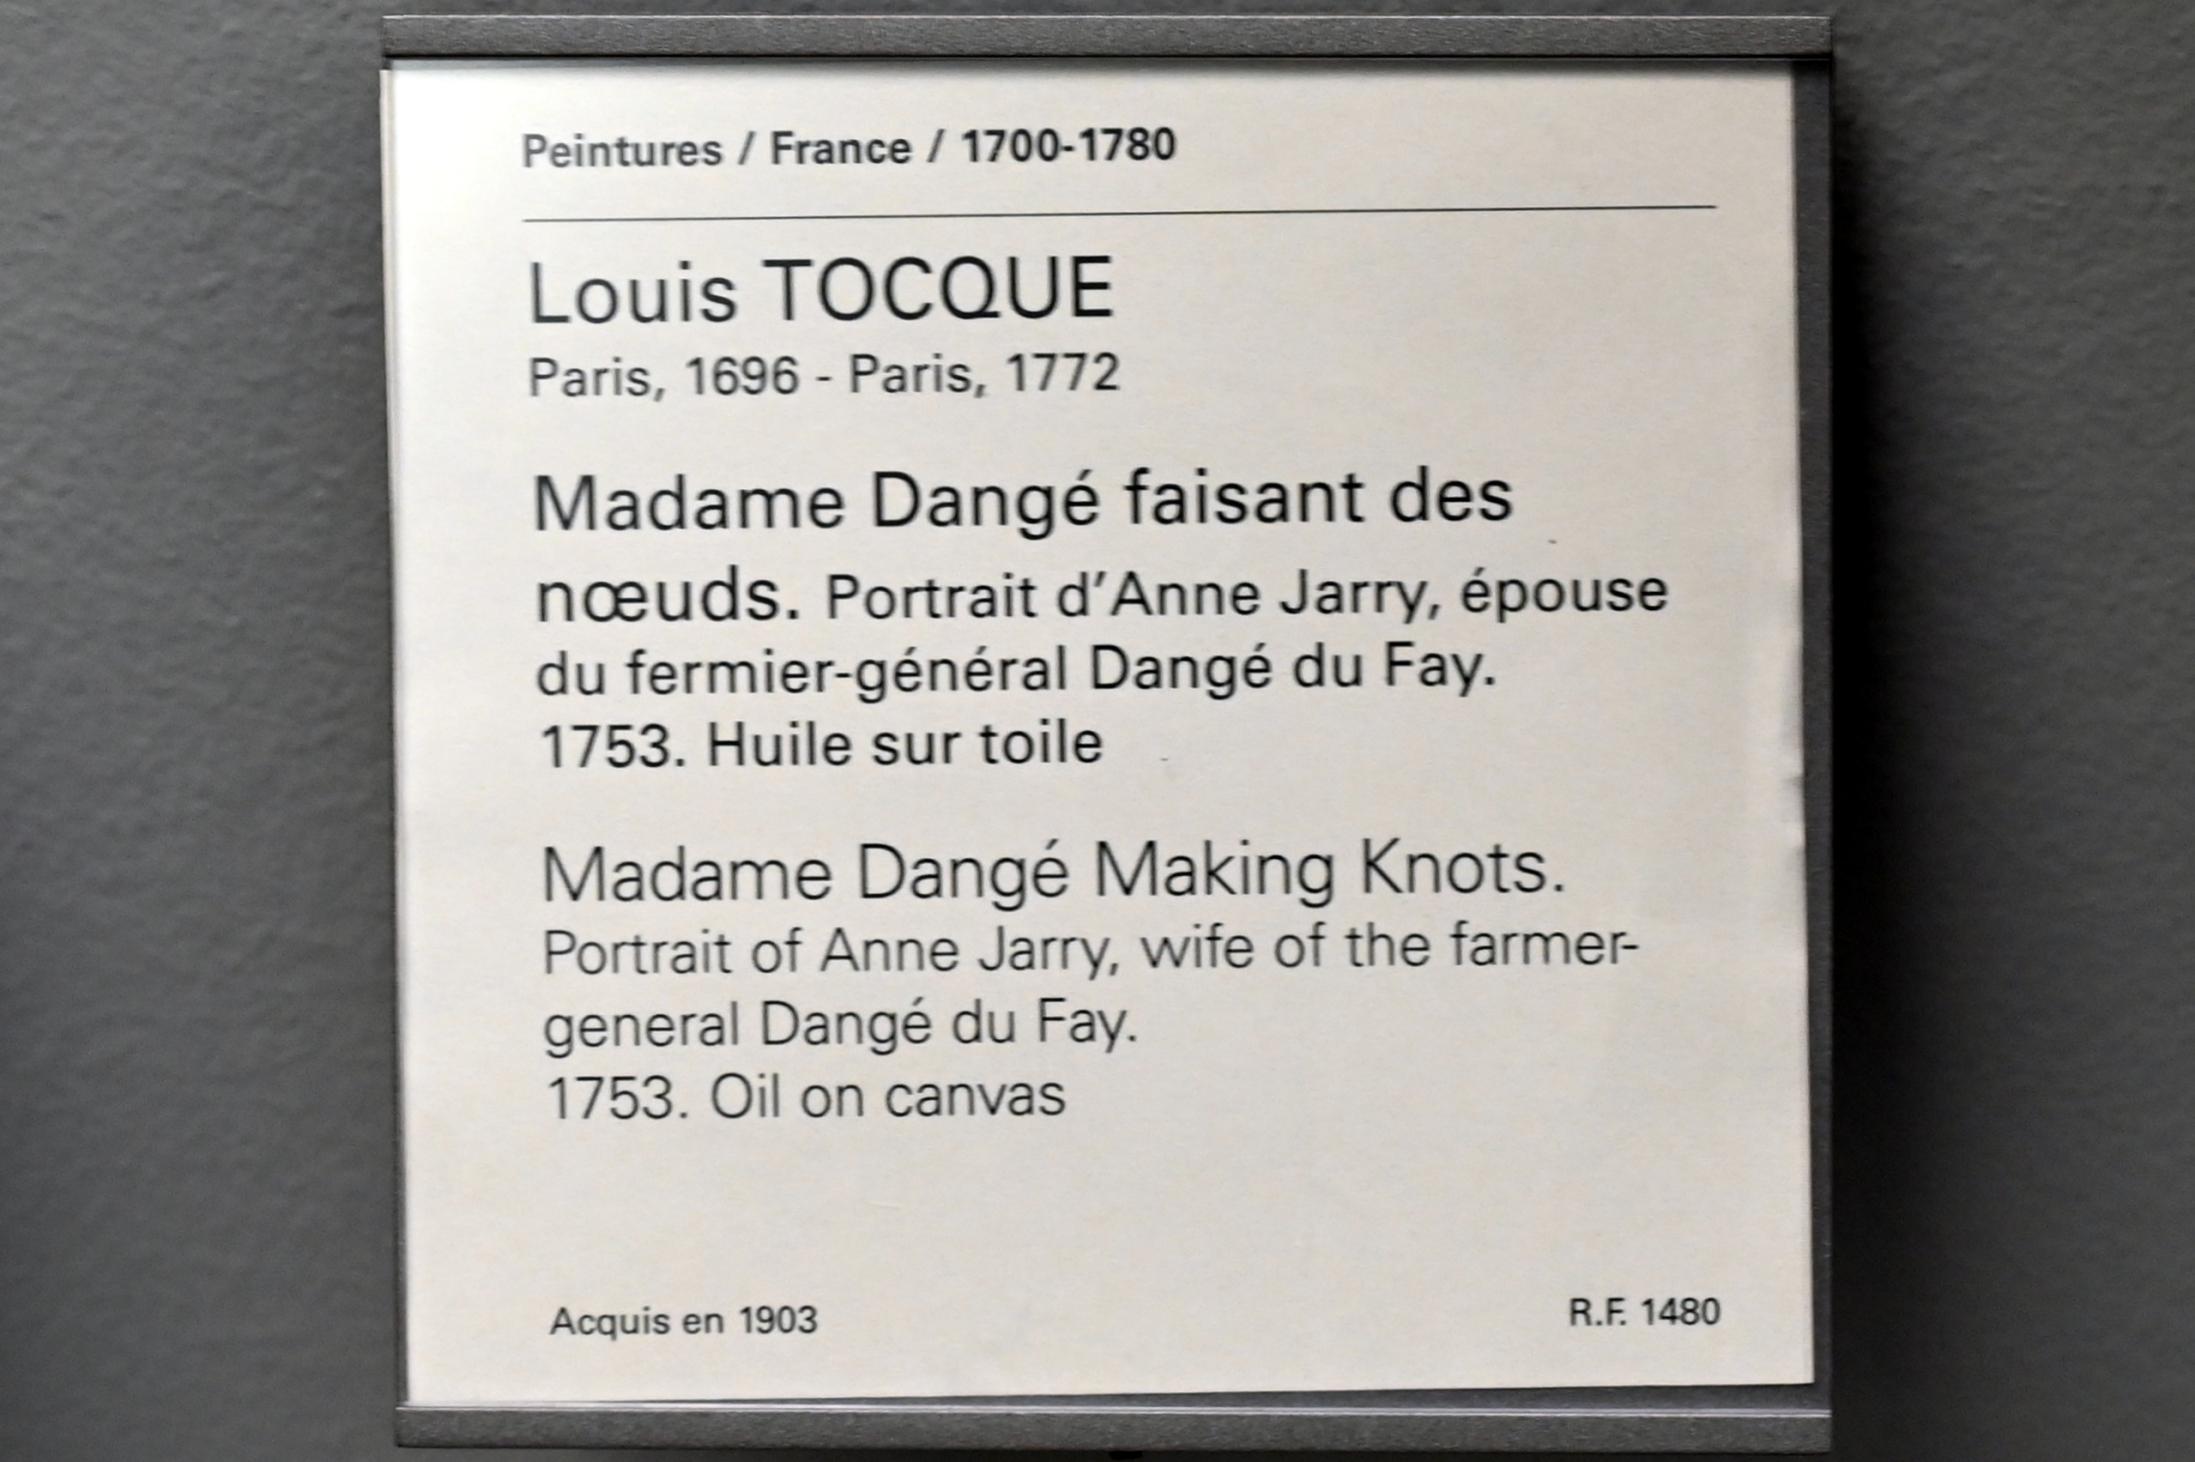 Louis Tocqué (1740–1753), Porträt der Madame Dange, geborene Anne Jarry, Ehefrau von Farmer-General Dangé du Fay, beim Knotenknüpfen, Paris, Musée du Louvre, Saal 928, 1753, Bild 2/2